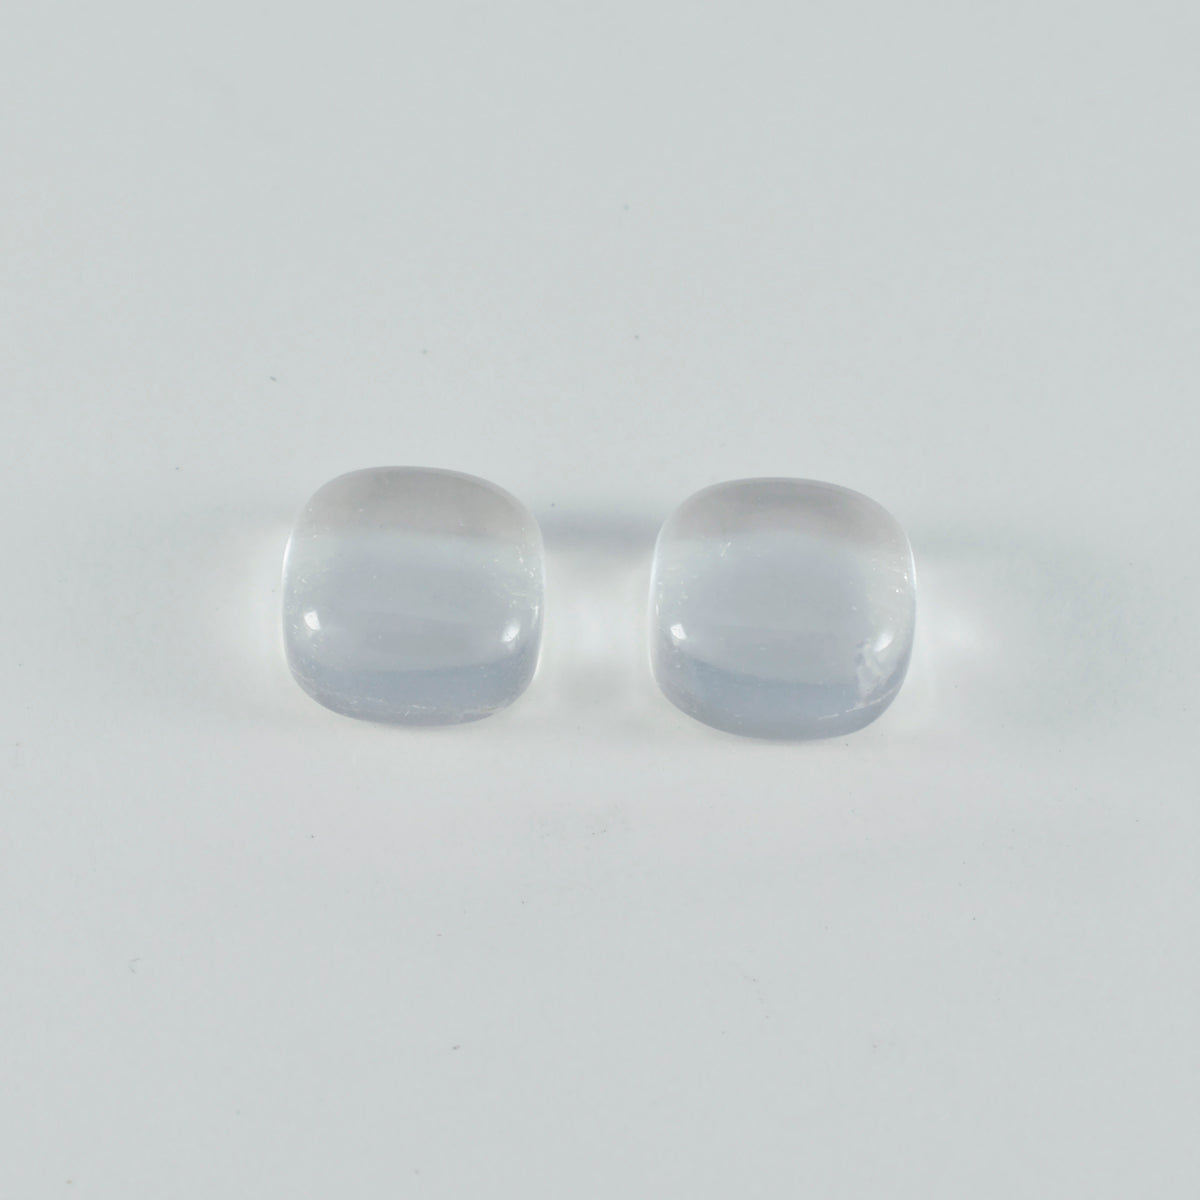 Riyogems 1 Stück weißer Kristallquarz-Cabochon, 9 x 9 mm, Kissenform, gut aussehender, hochwertiger loser Stein